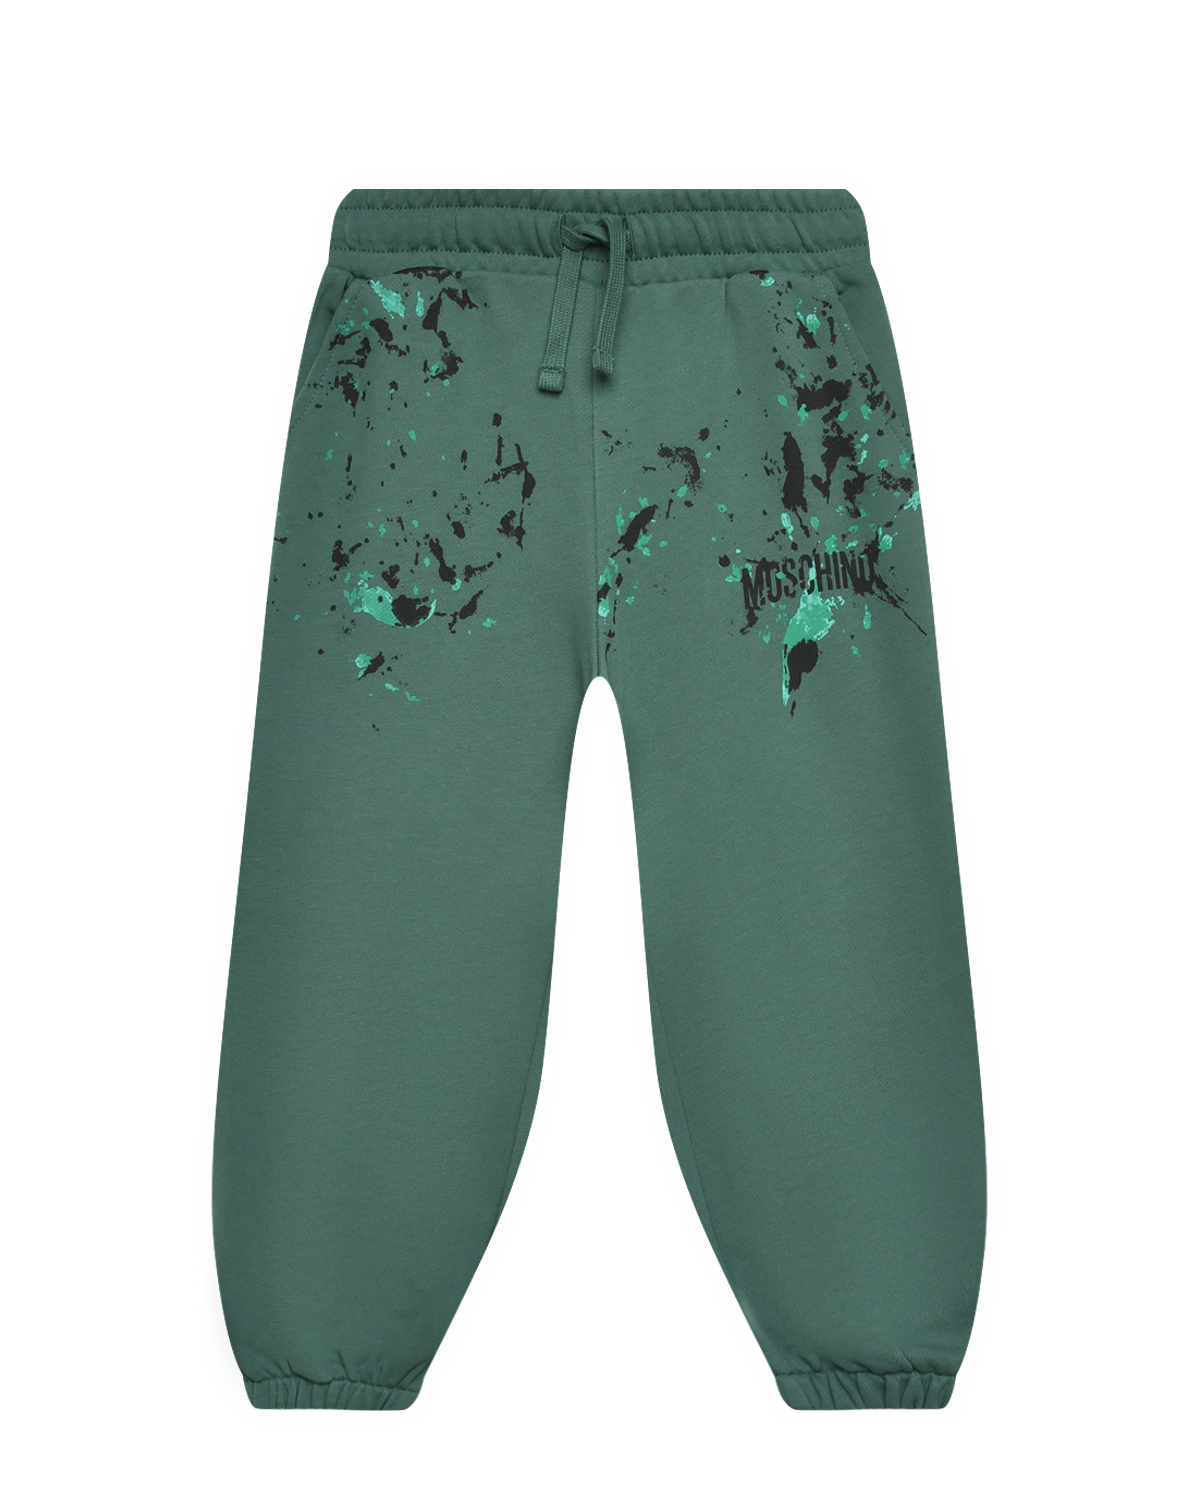 Спортивные брюки с принтом "кляксы" Moschino, размер 140, цвет зеленый